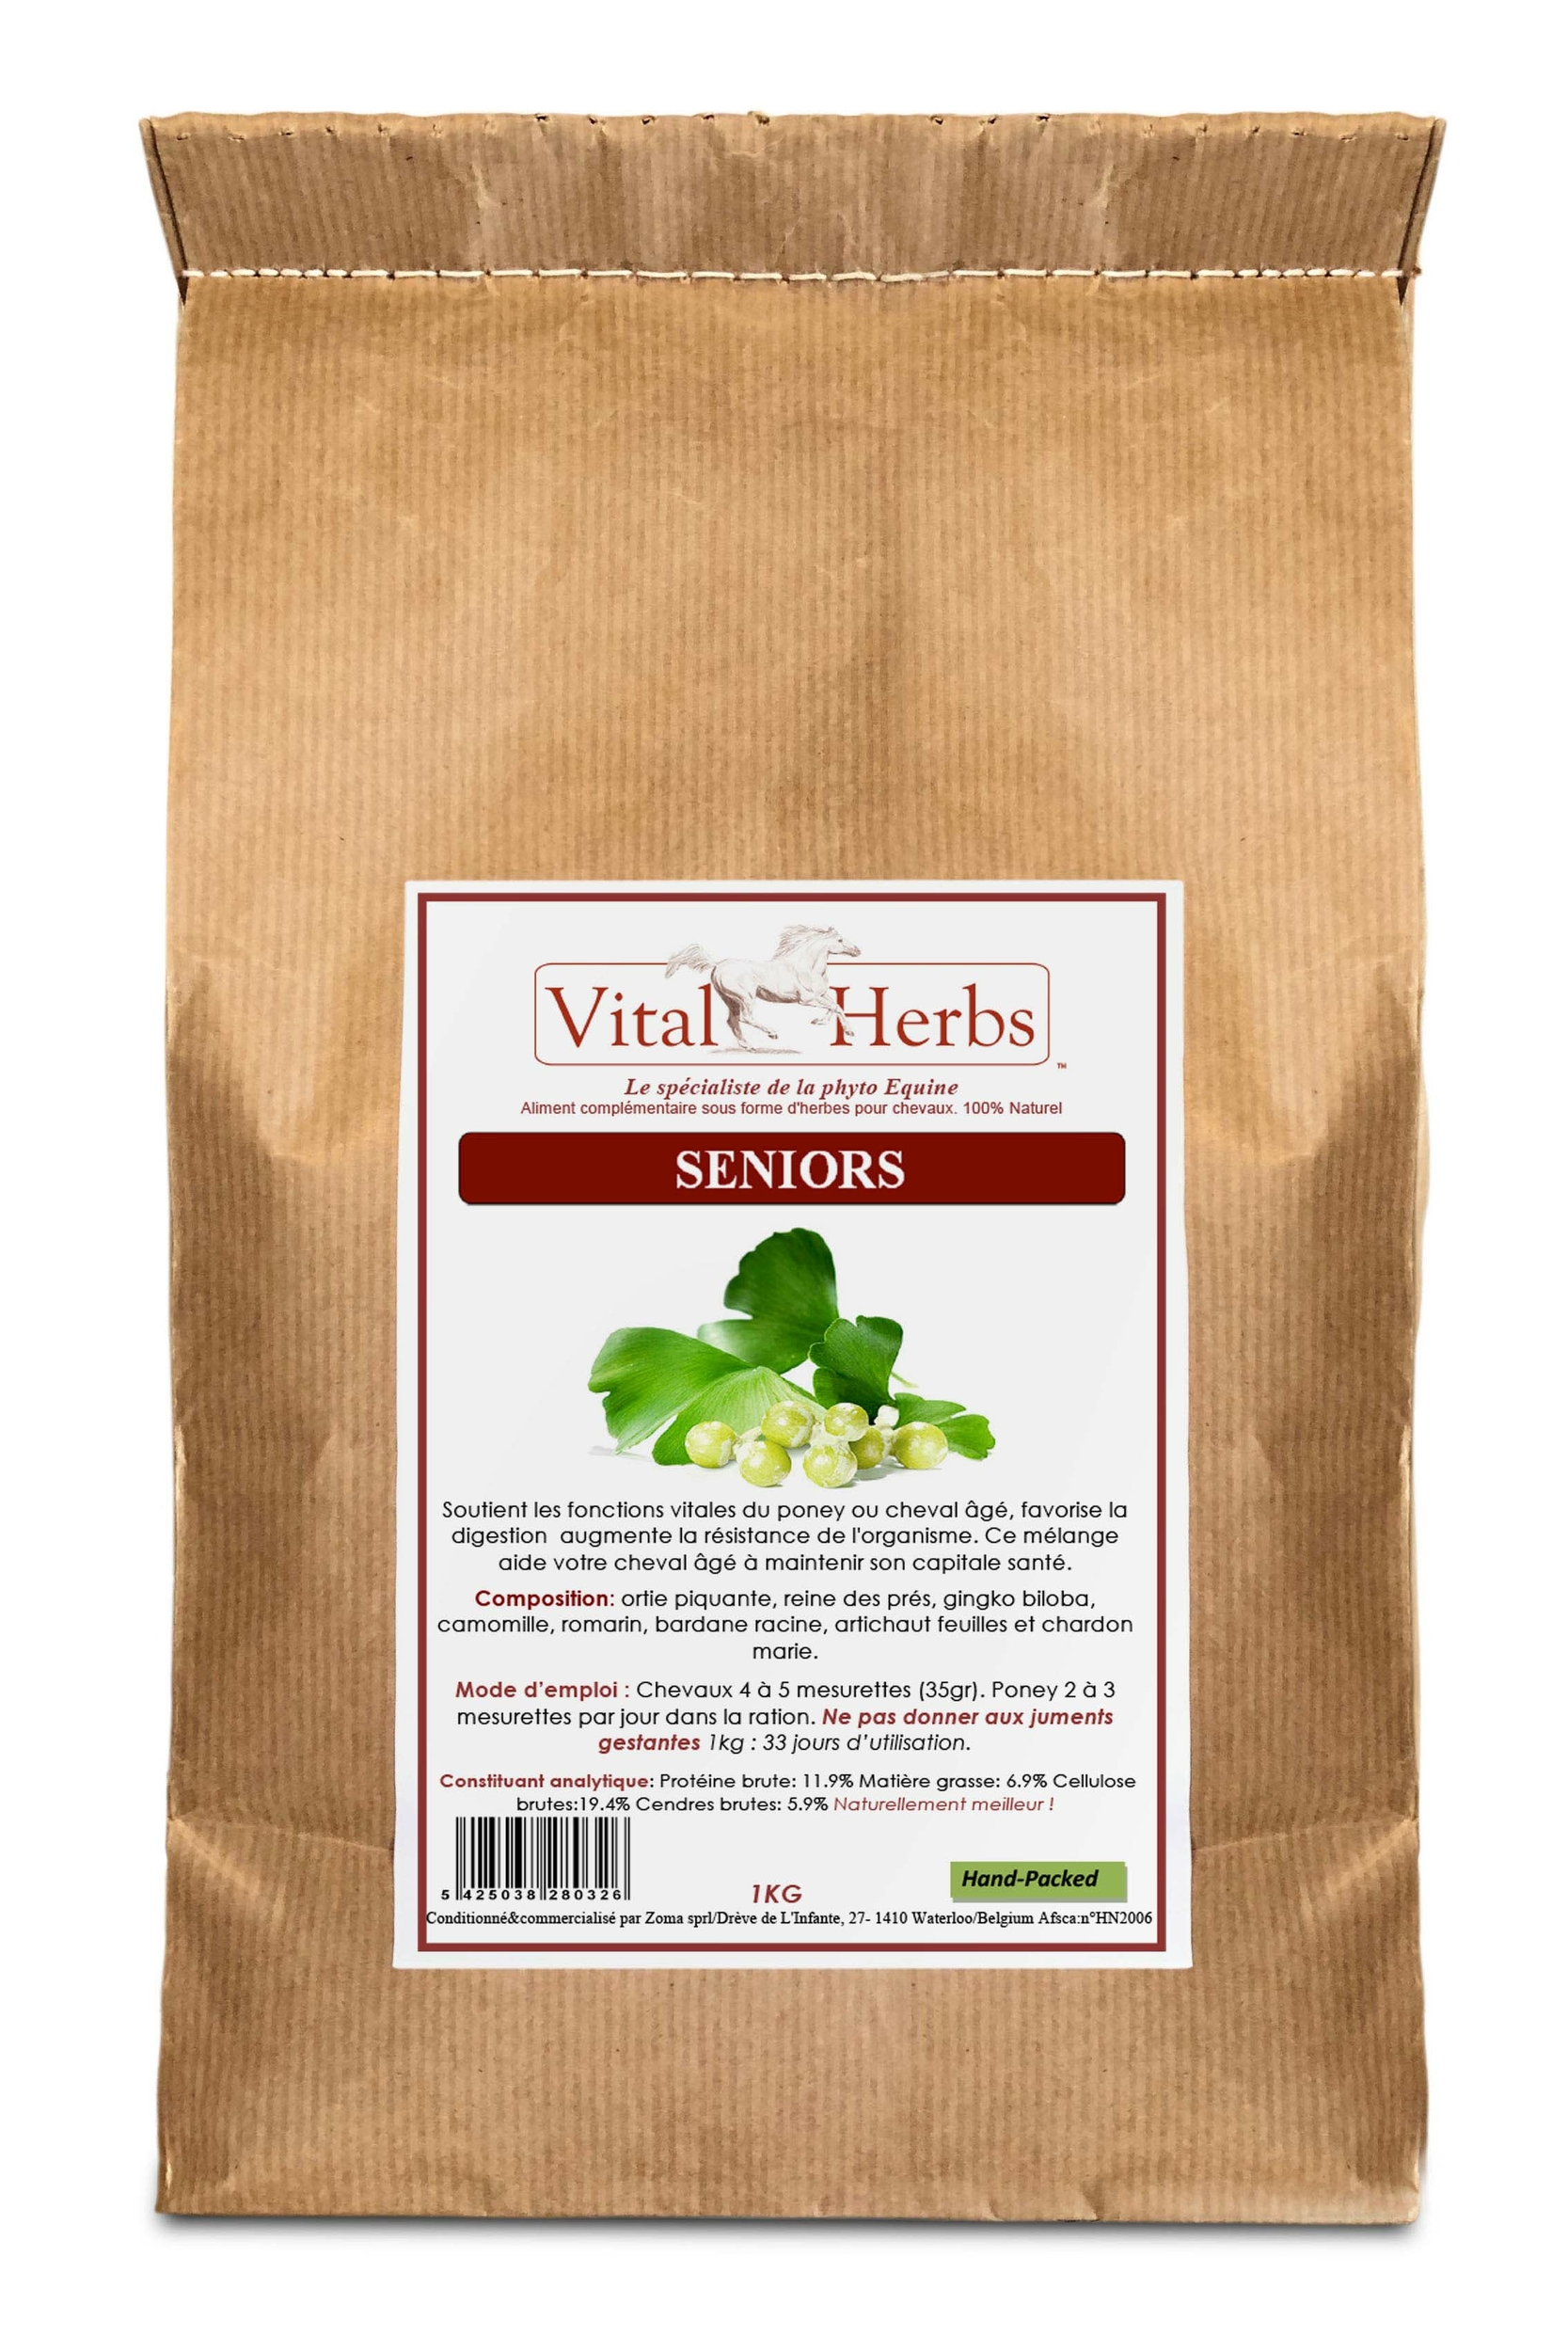 sac-1-kg-seniors-vital-herbs